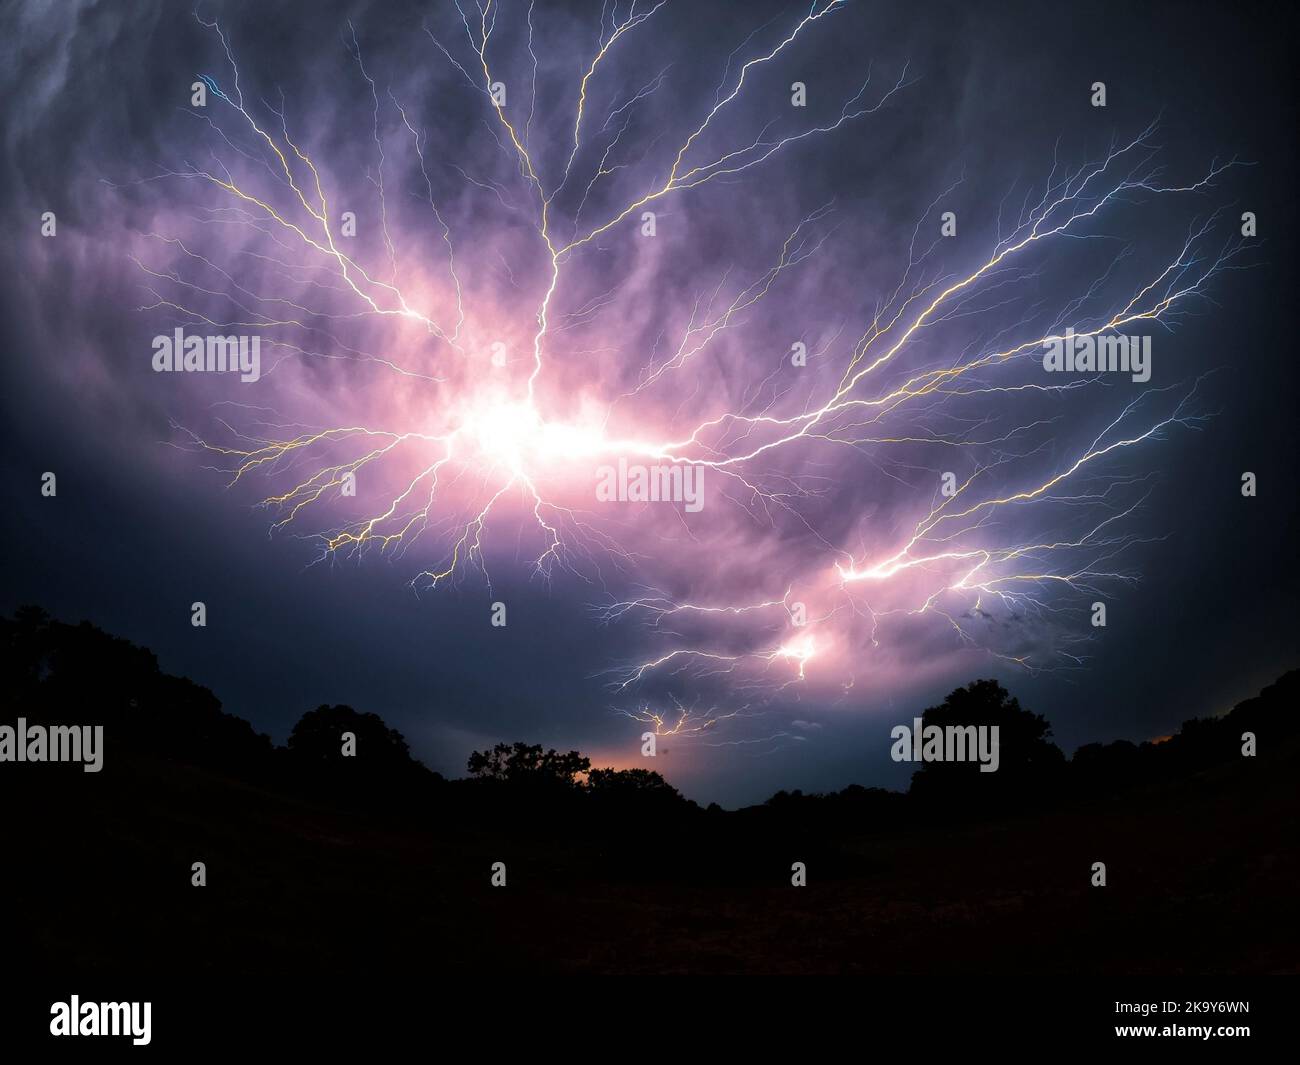 Múltiples rayos de araña que llegan a través del cielo en una tormenta de noche, en un ángulo amplio Foto de stock